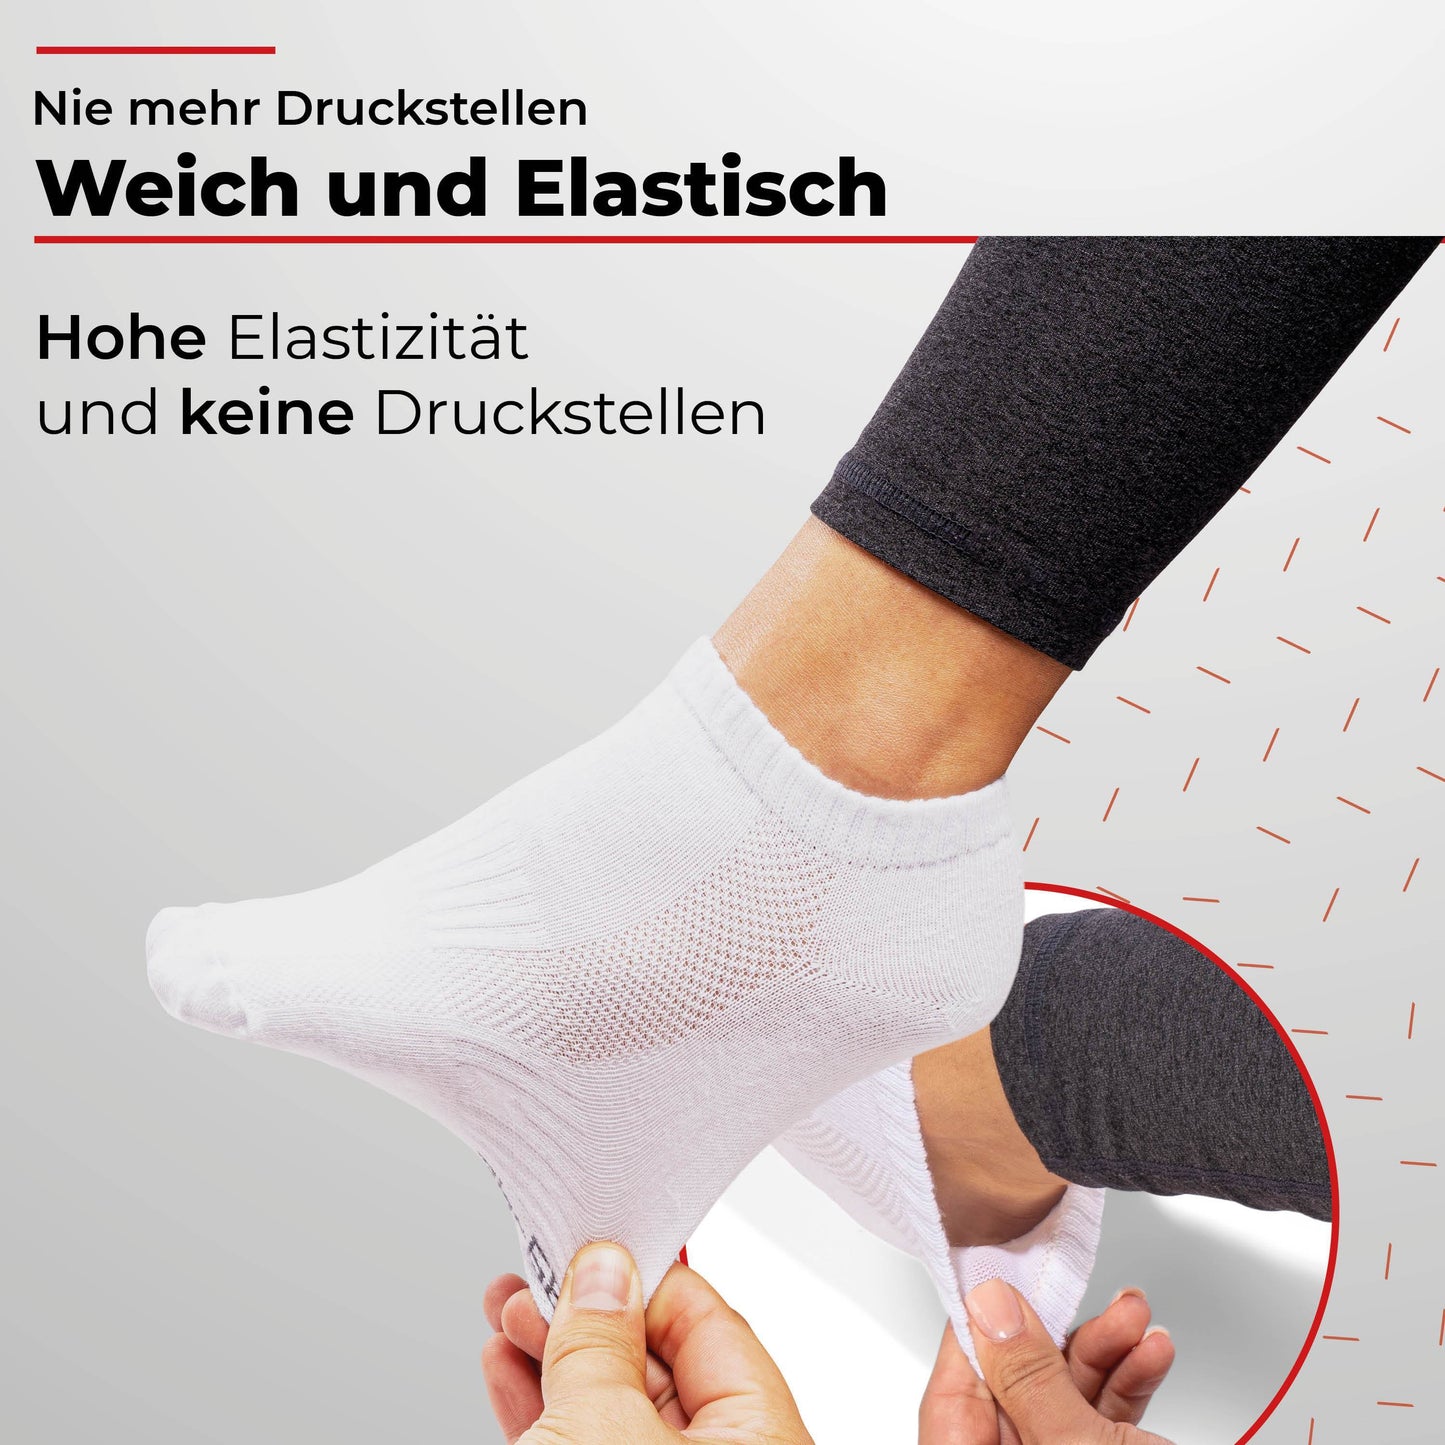 Sneaker Socken Damen & Herren (10 Paar) - Schwarz/Weiß